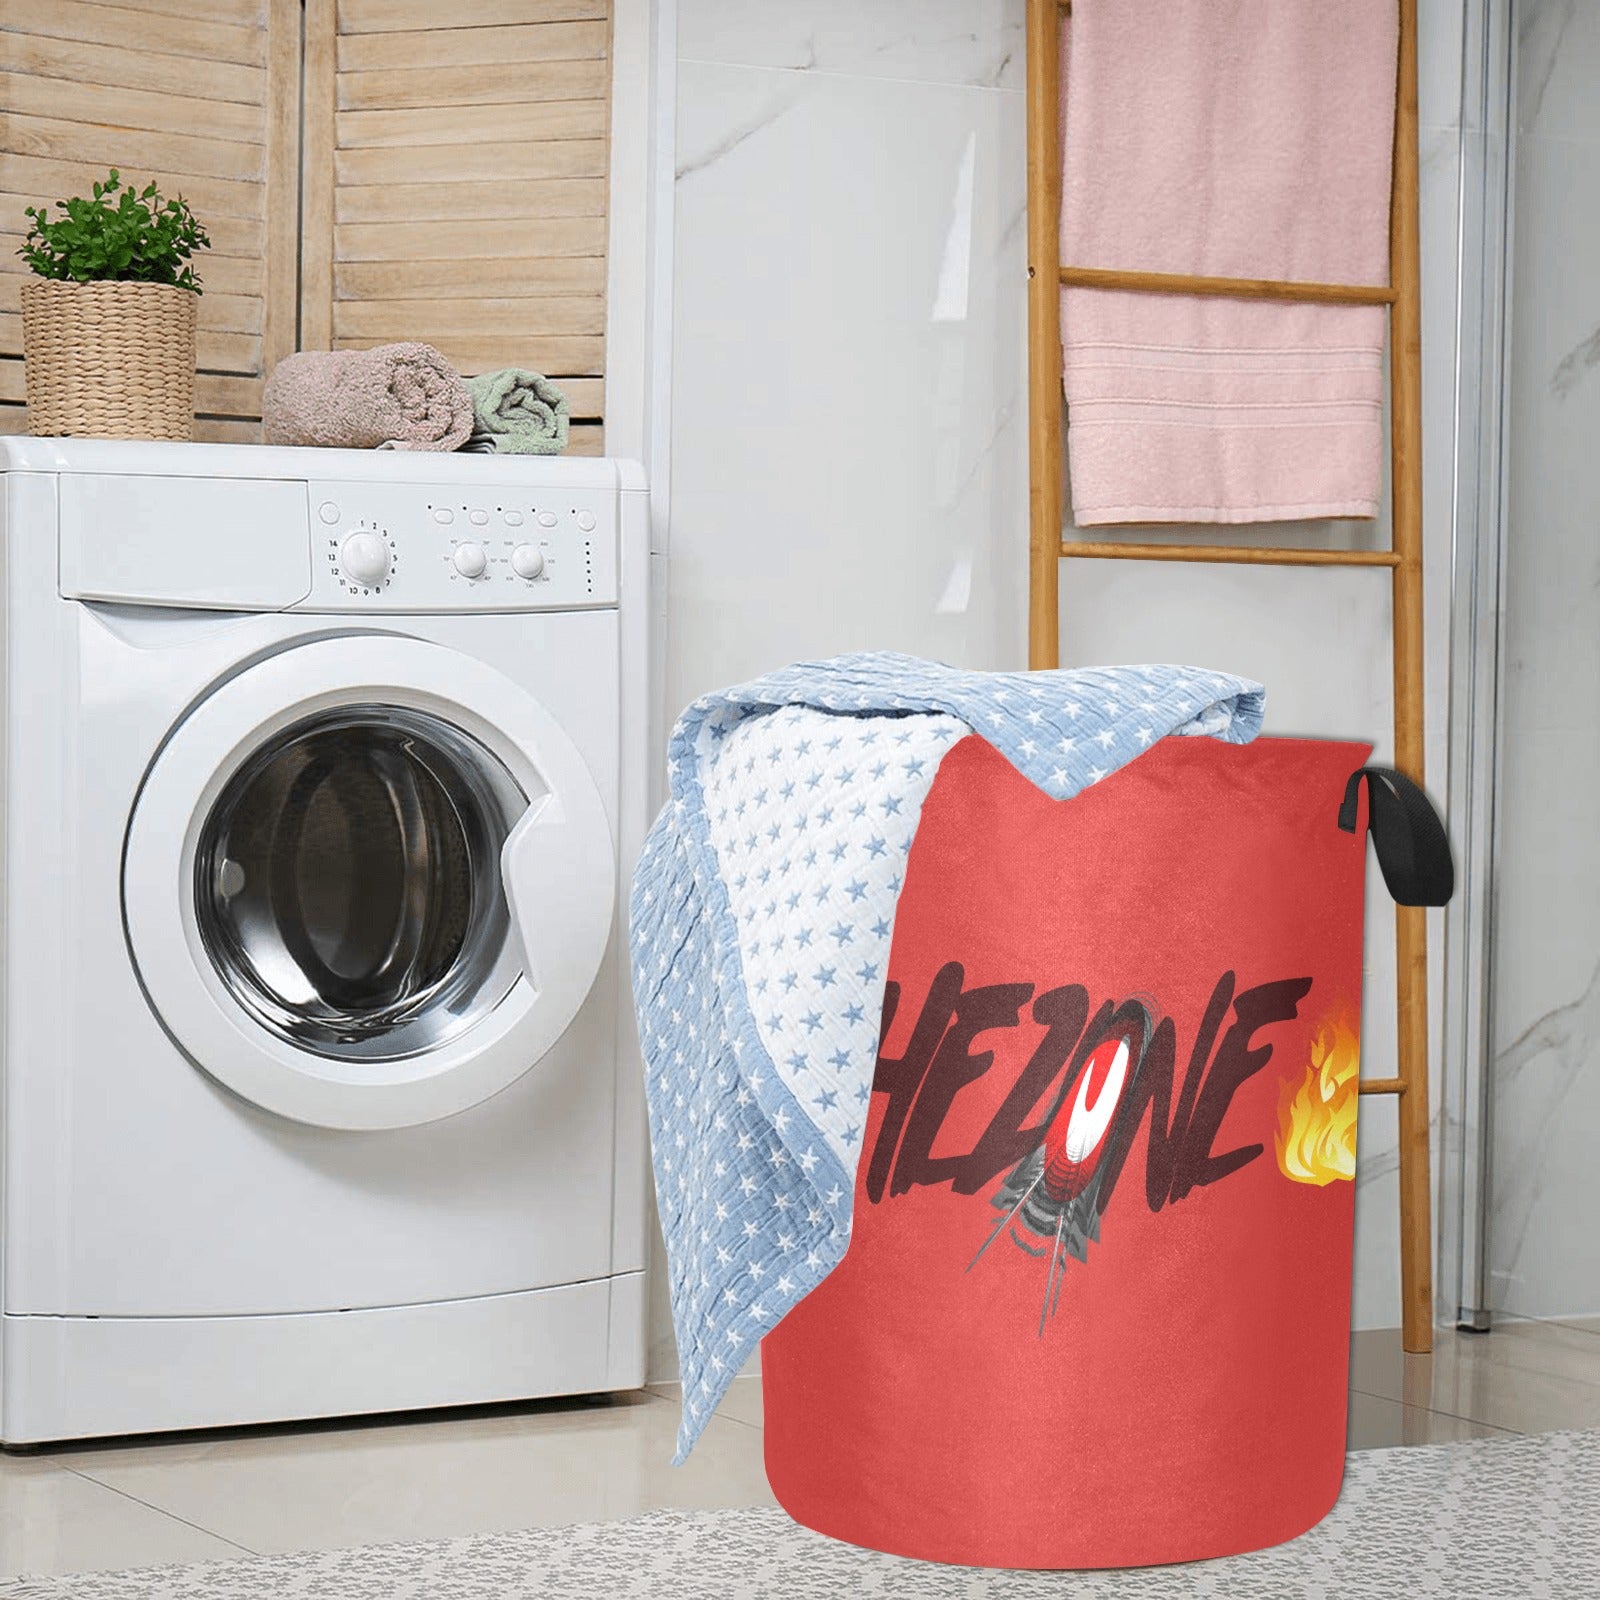 fz laundry basket - large one size / fz laundry basket - red laundry basket(large)